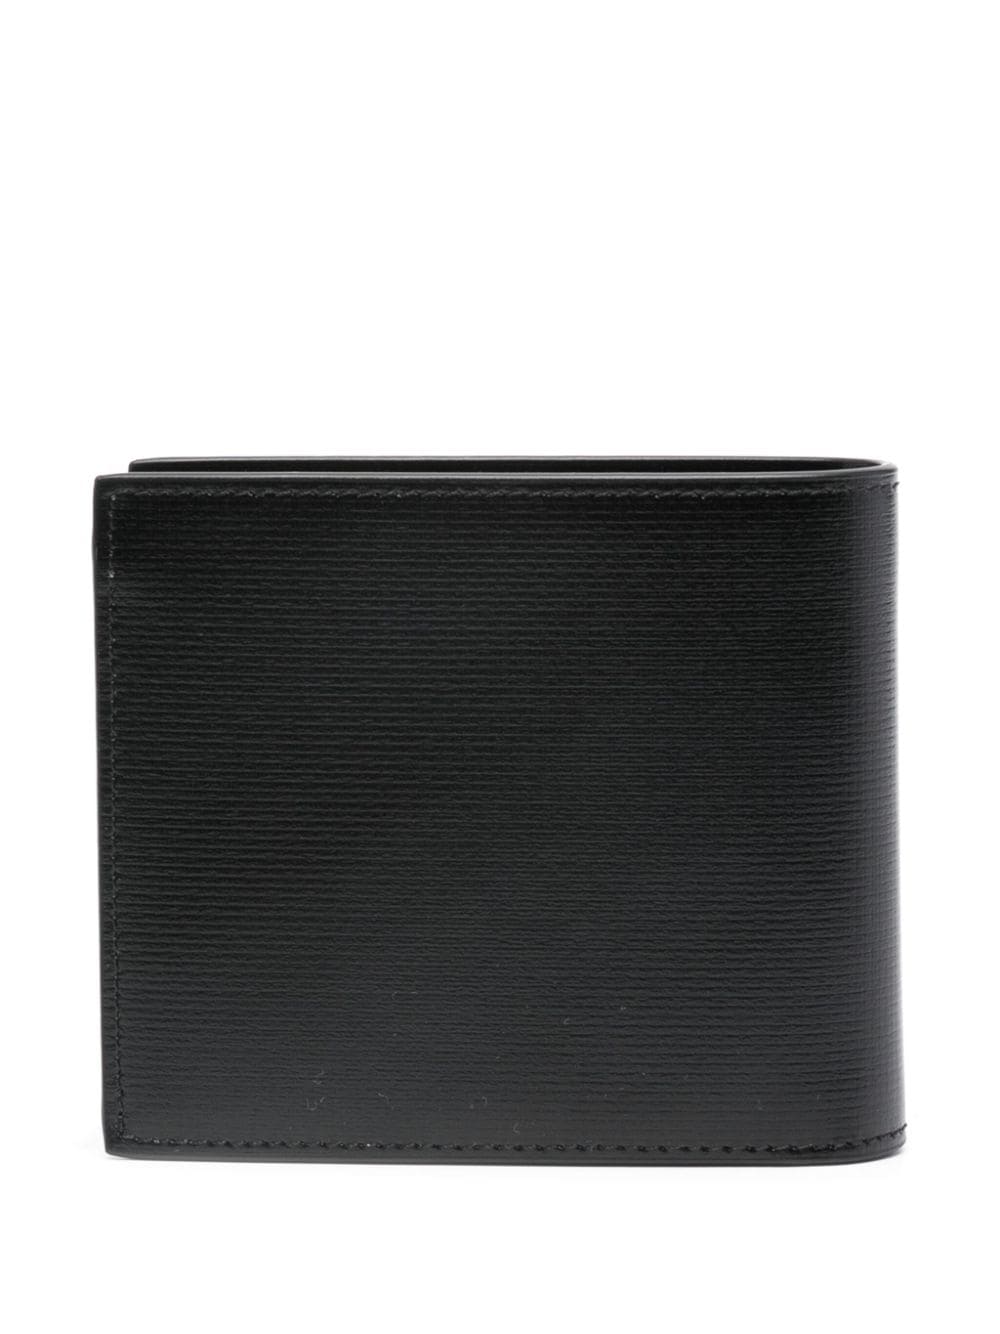 Givenchy 4G Classic kleine leren portemonnee - Zwart